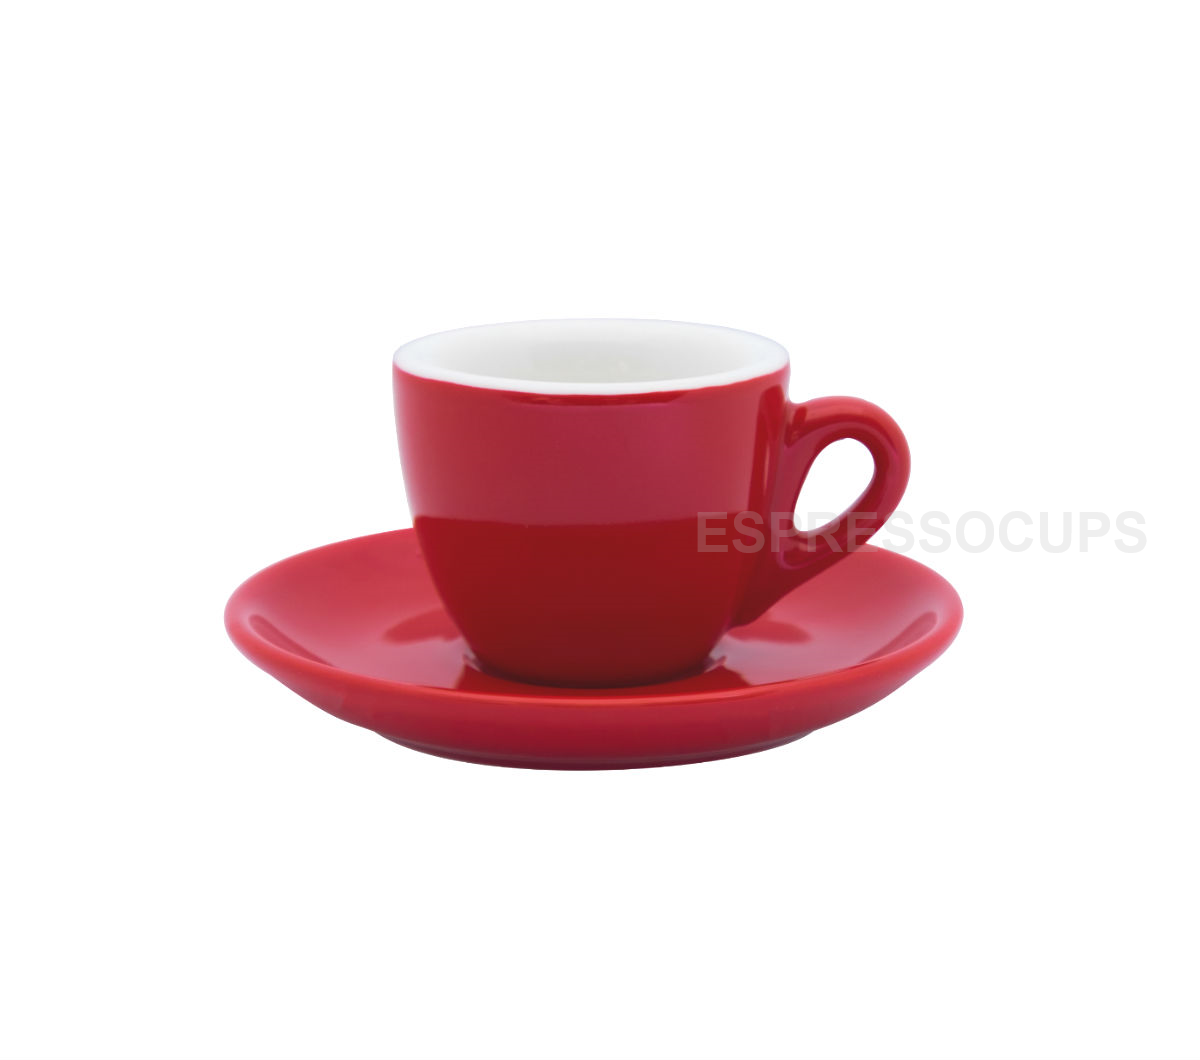 "ROSA" Espresso Cups 70ml - red